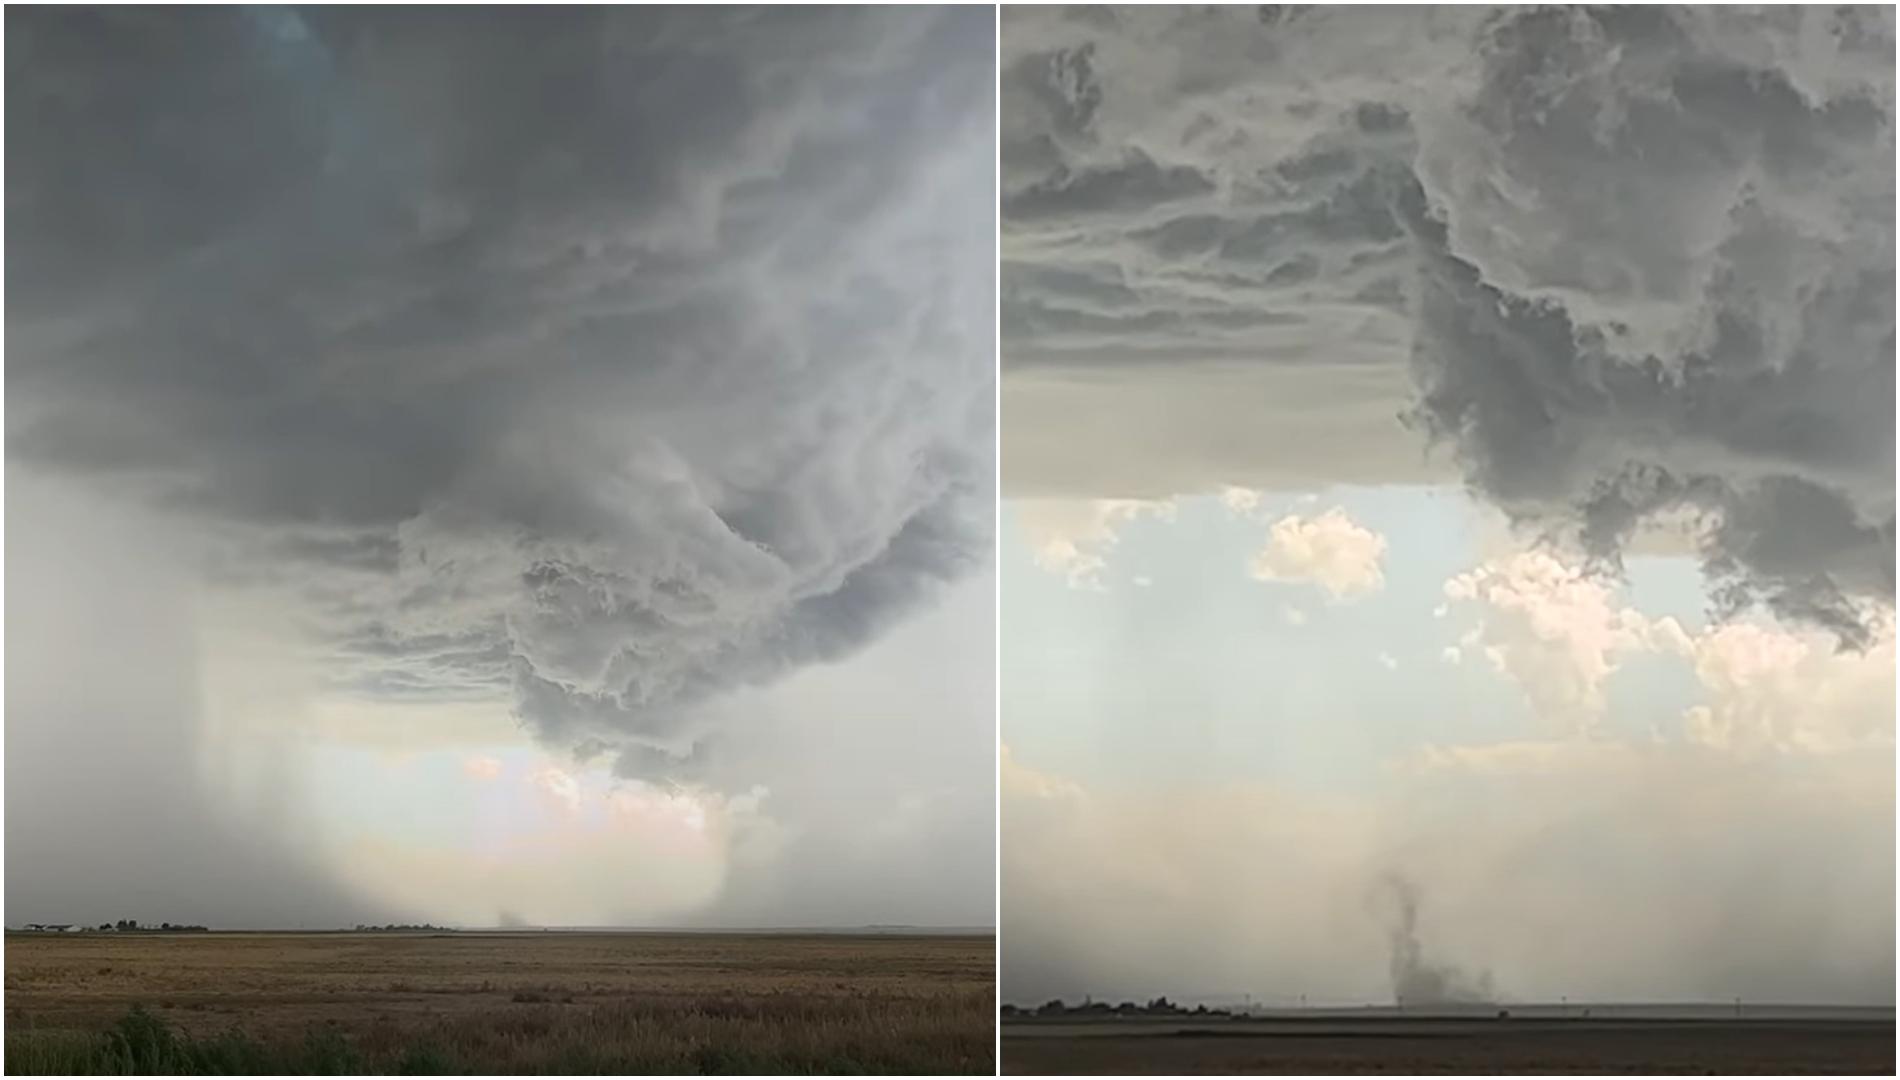 Fenomenul fascinant care a apărut pe cer în timpul unei furtuni. Ce a fost surprins, de fapt, în imagini | VIDEO